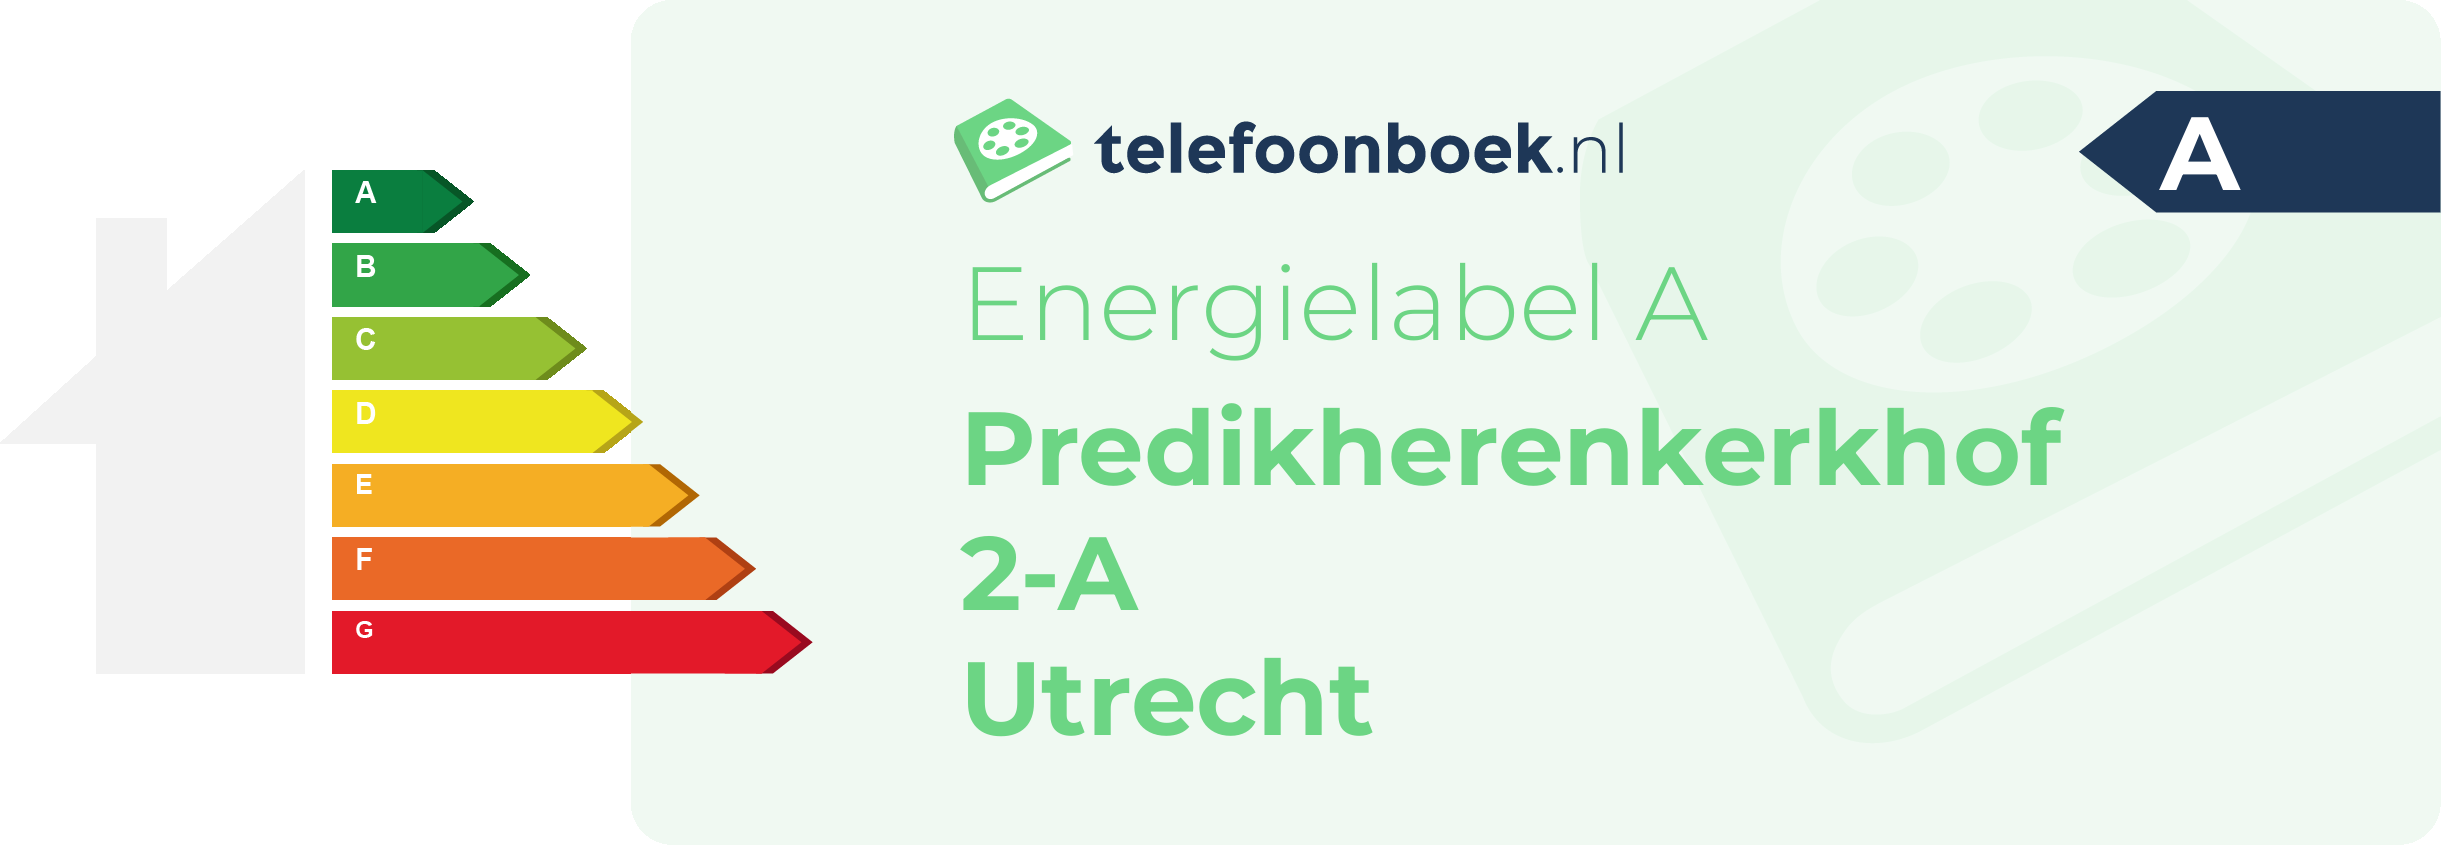 Energielabel Predikherenkerkhof 2-A Utrecht